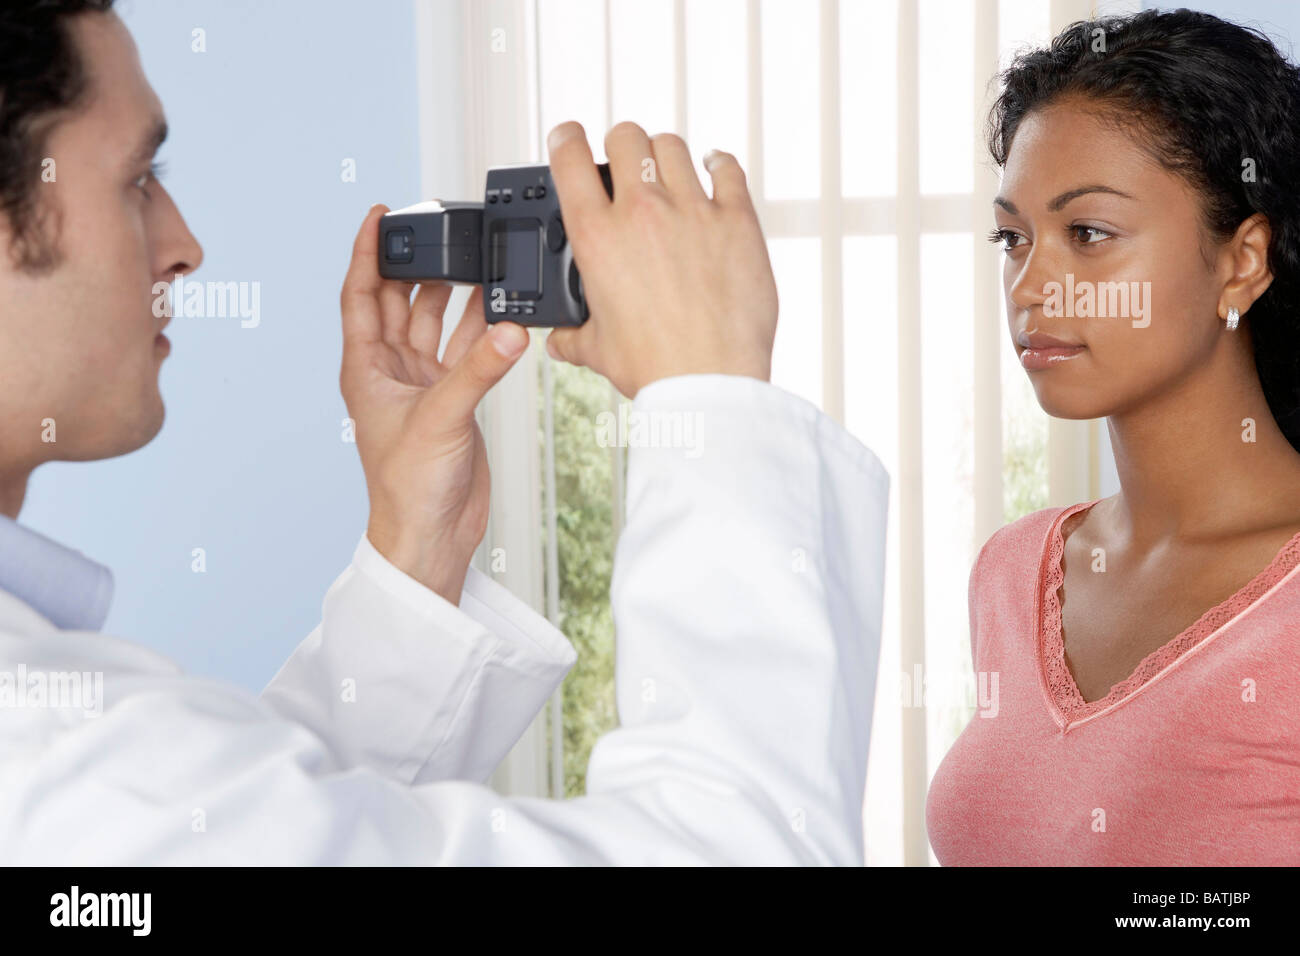 Chirurgia estetica. Consulente prende una fotografia del suo paziente prima che egli subisce interventi di chirurgia estetica. Foto Stock